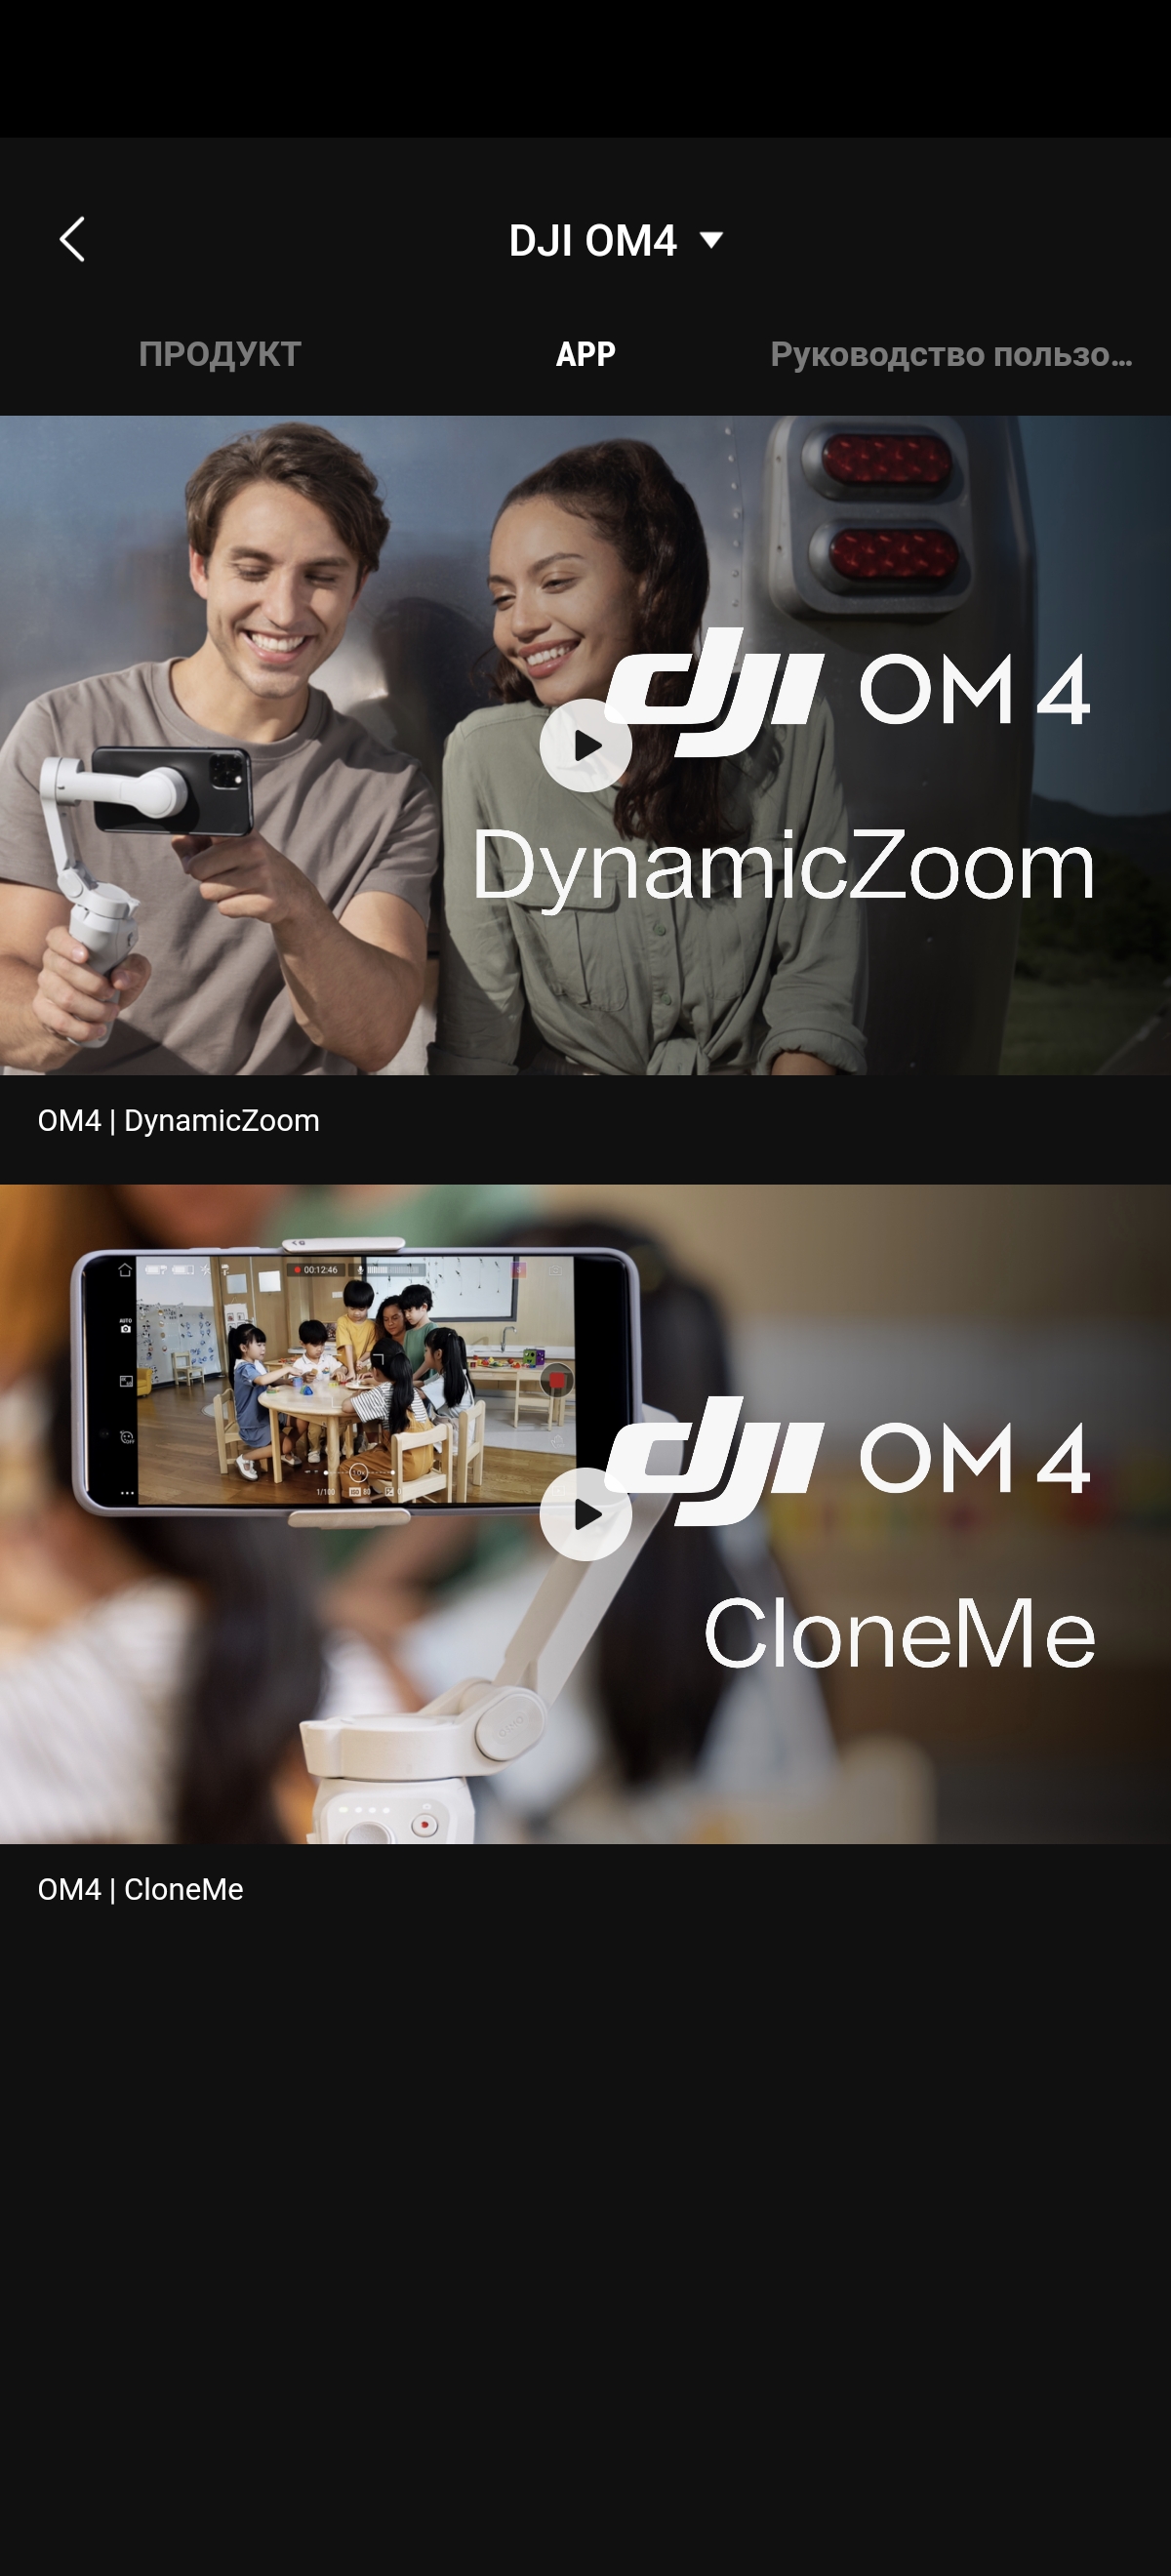 Обзор DJI OM4 (Osmo Mobile 4): самый технологичный стабилизатор для смартфона-38